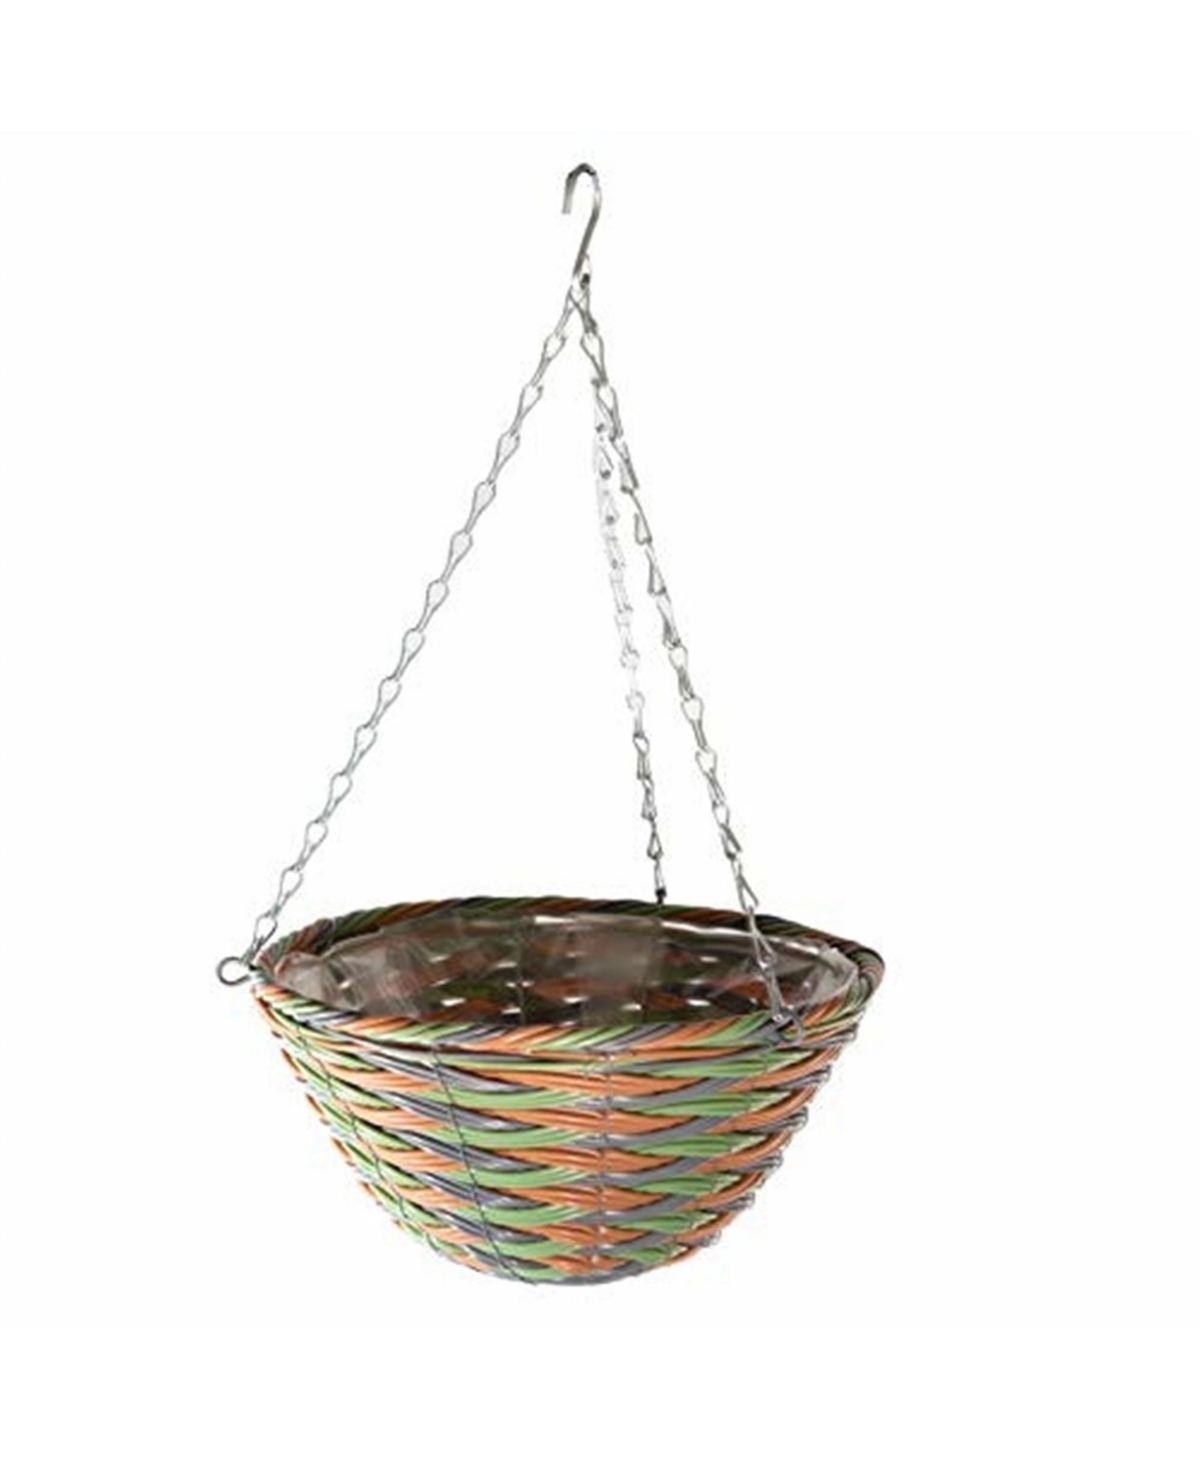 Woven Plastic Rattan Hanging Basket, 12in Diameter - Multi